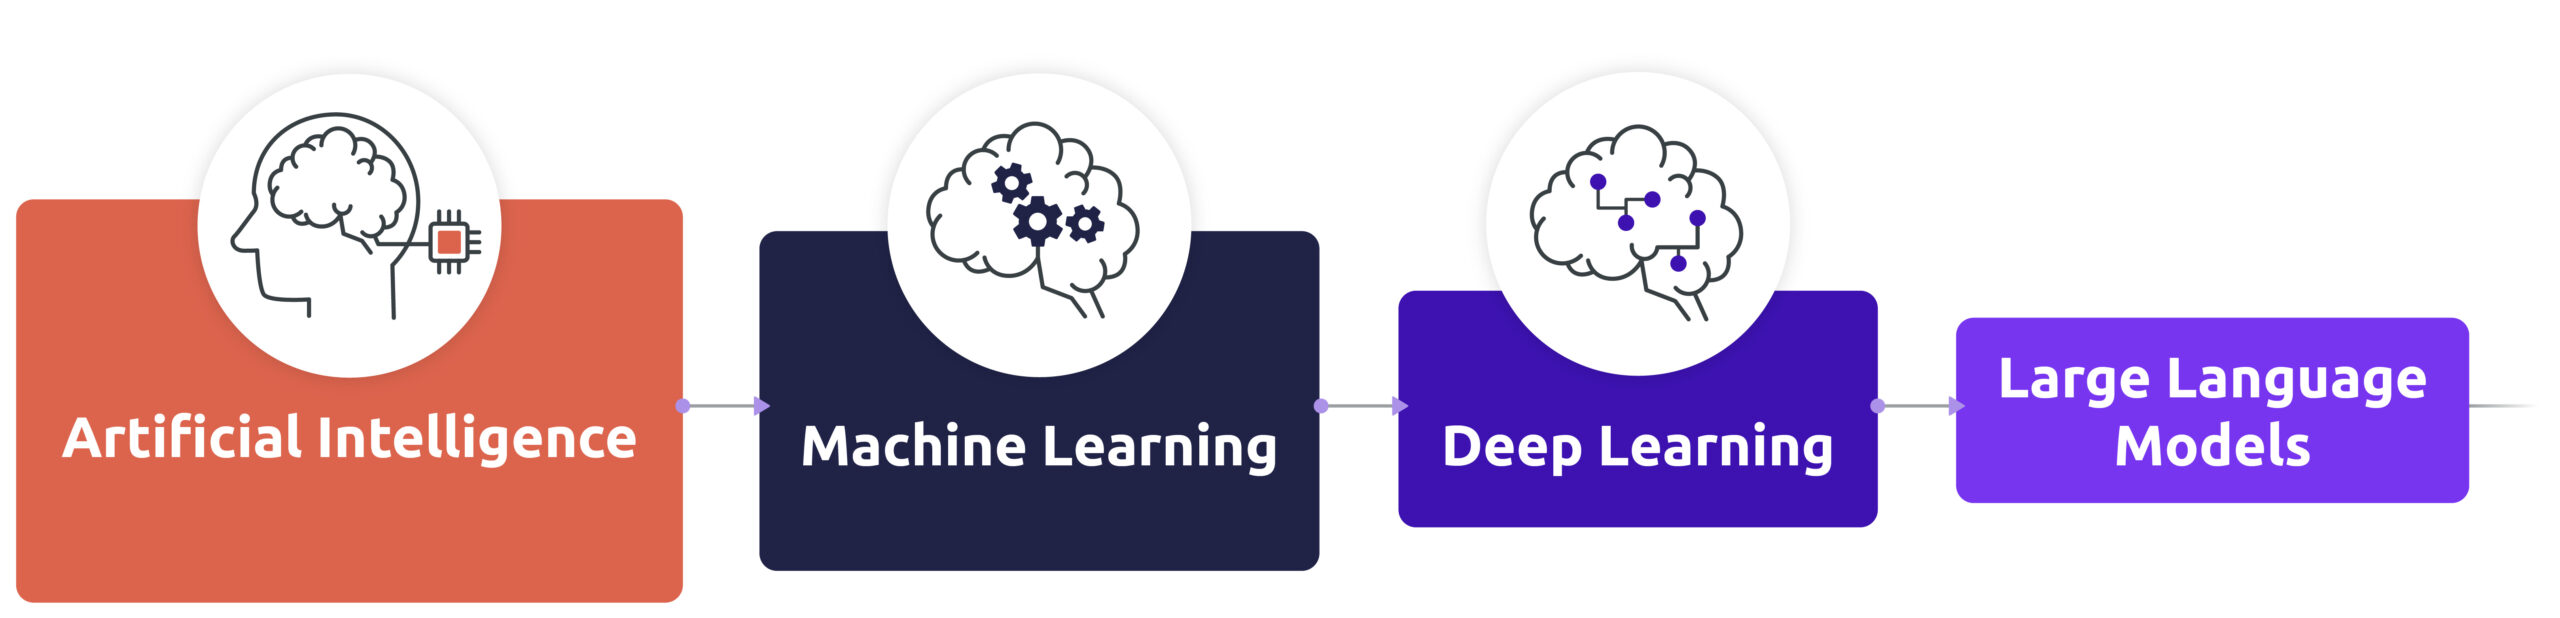 Les différents types d'intélligences artificielles : Machine Learning, Deep Learning, Large Language Models